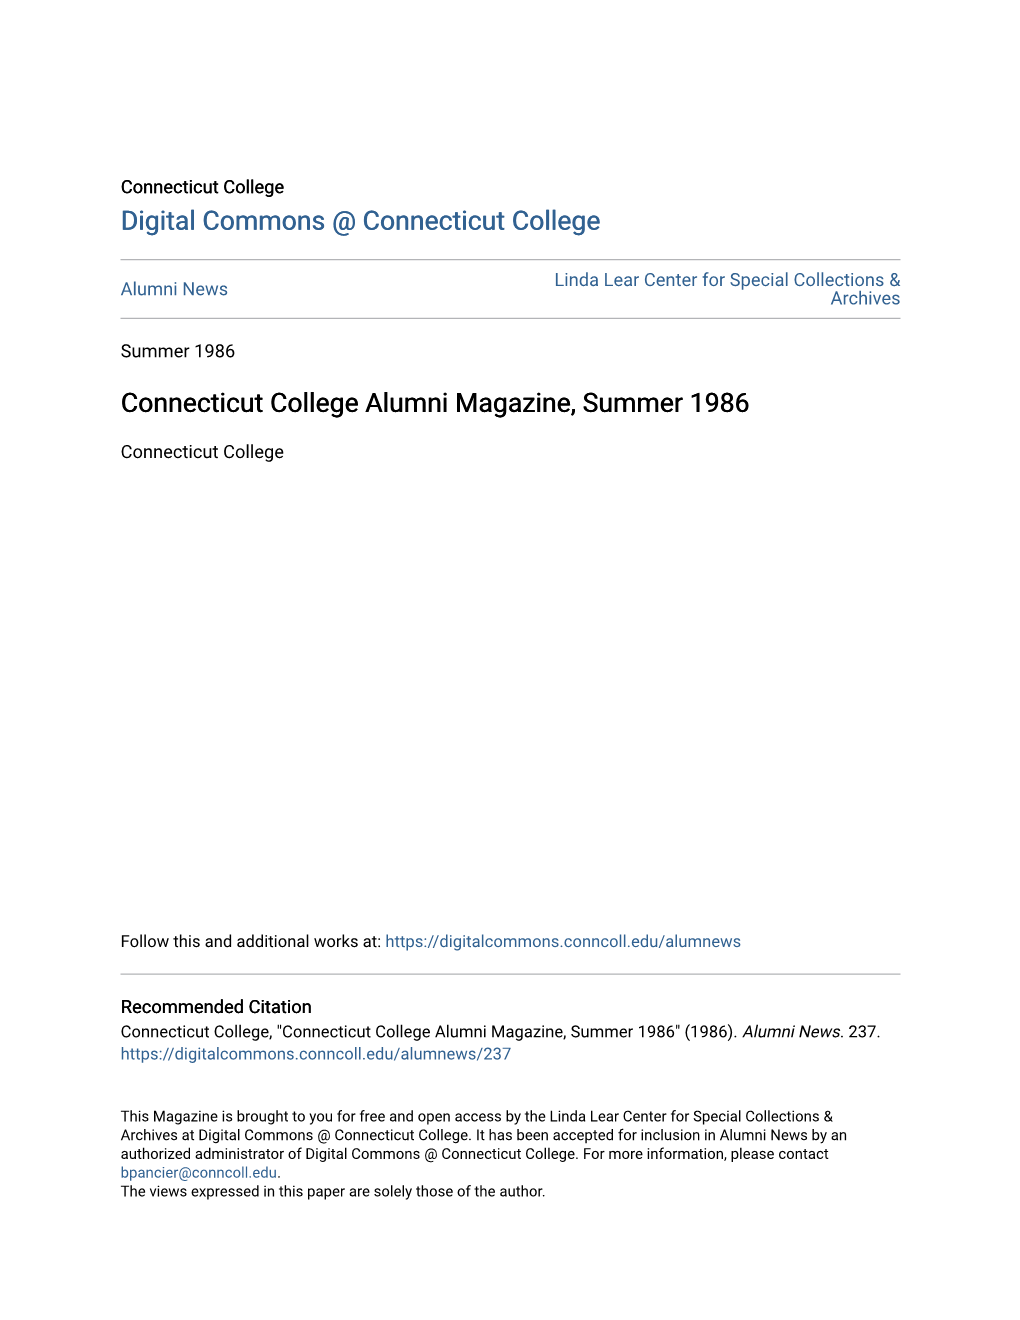 Connecticut College Alumni Magazine, Summer 1986